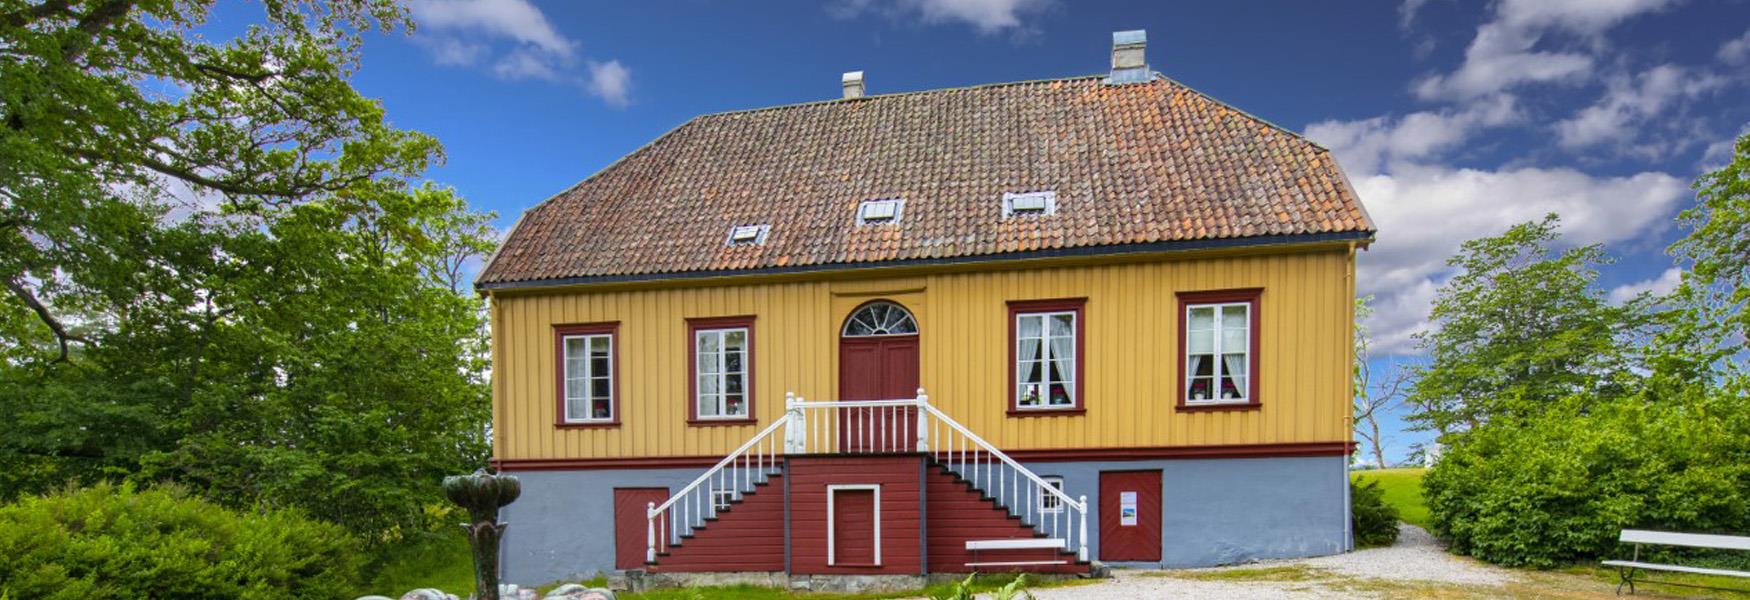 Berg-Kragerø Museum ligger rett ved Hellefjorden, 3 km fra Kragerø sentrum. Bli fascinert av Lystgården fra 1803 og de andre historiske bygningene. Her fortelles solskinnshistorien om Edvard Munch og Kragerø, naturis-eksporten, sjøfart og hytteliv i skjærgården.